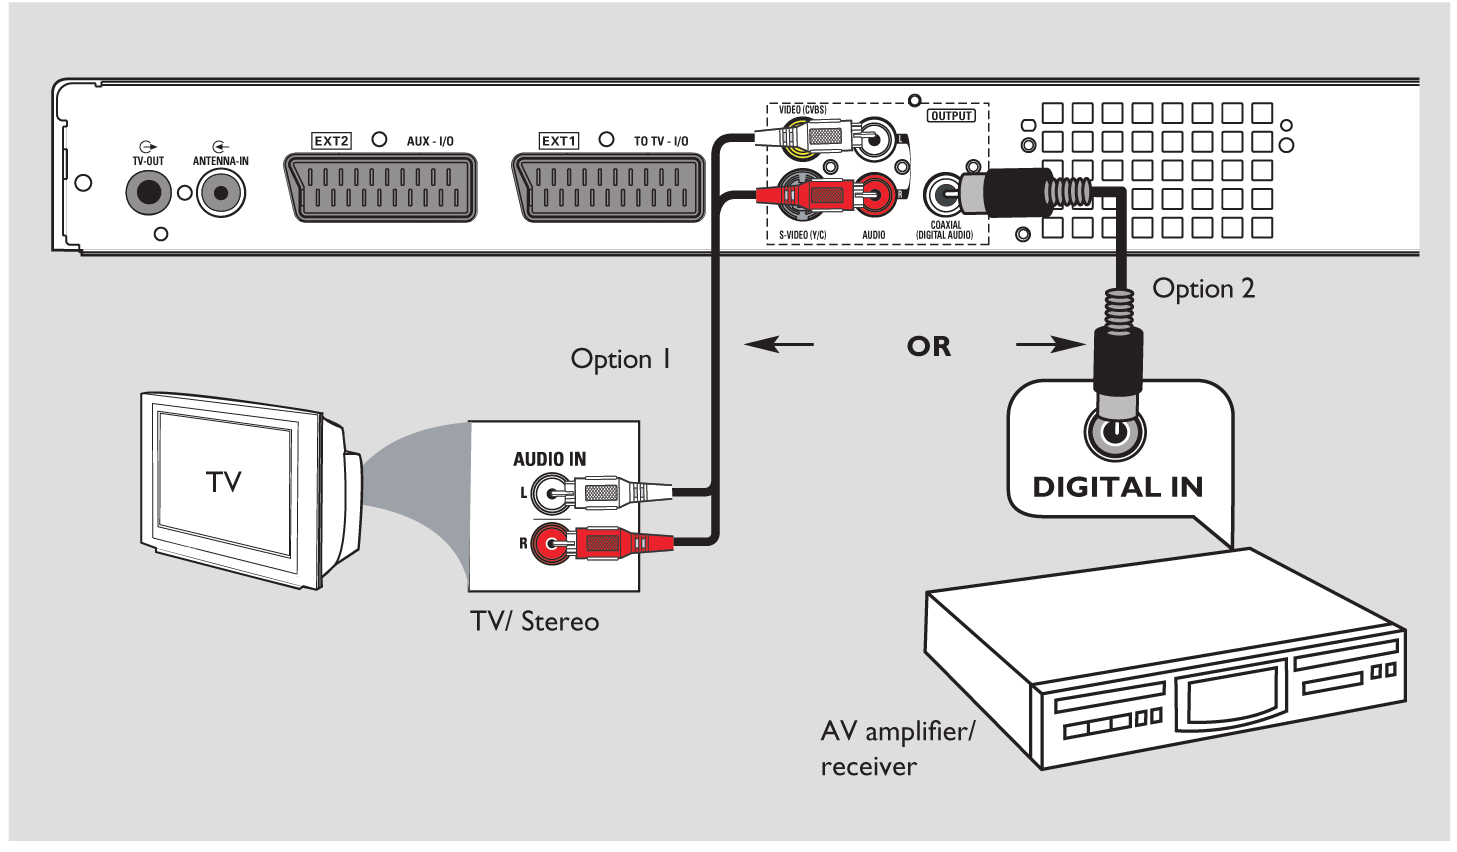 1. lépés: A felvevő alapszintű csatlakoztatása 1. lehetõség VAGY 2. lehetõség AV erõsítõ / receiver A hangkábelek csatlakoztatása Ez az összeköttetés a hang átviteléért felelős.